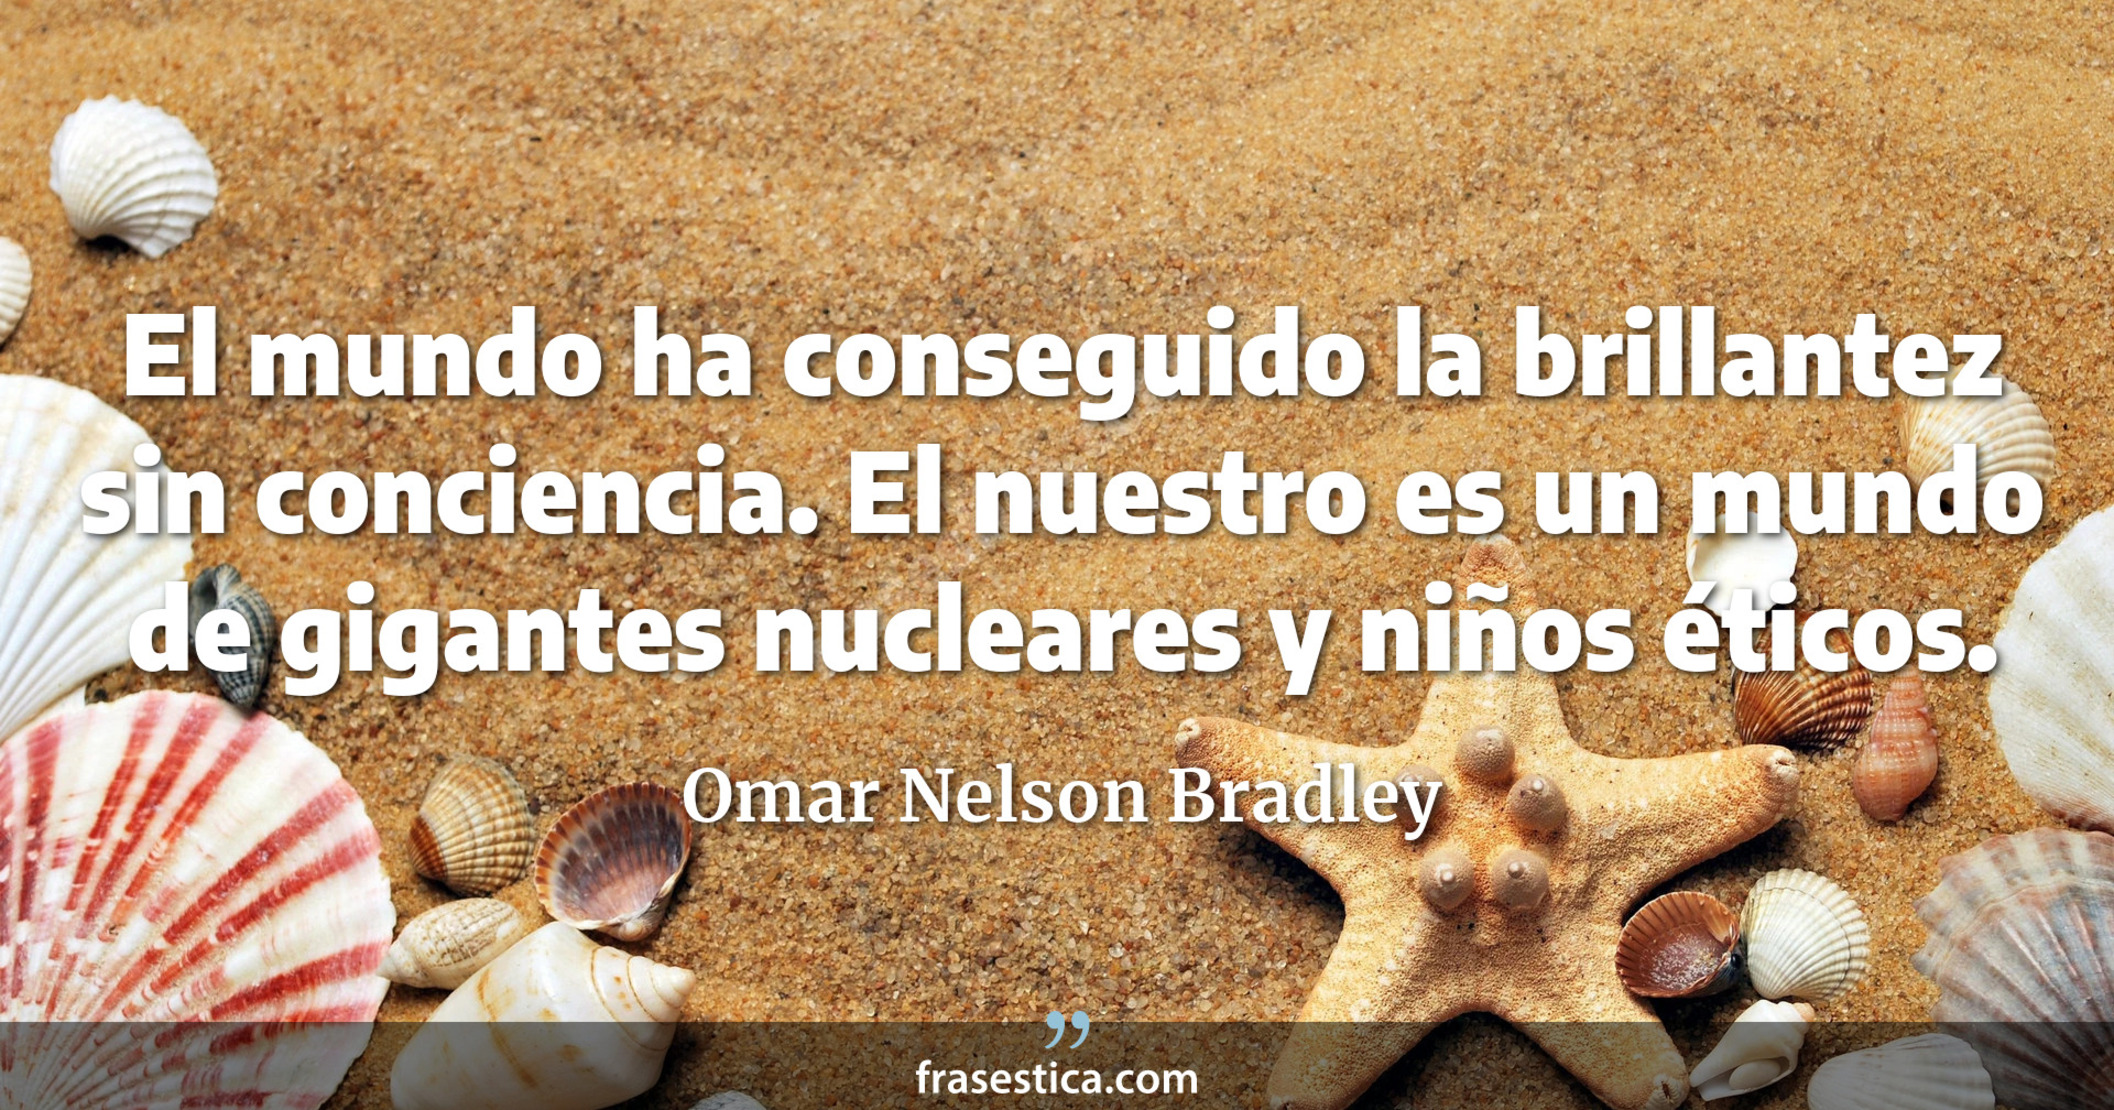 El mundo ha conseguido la brillantez sin conciencia. El nuestro es un mundo de gigantes nucleares y niños éticos. - Omar Nelson Bradley